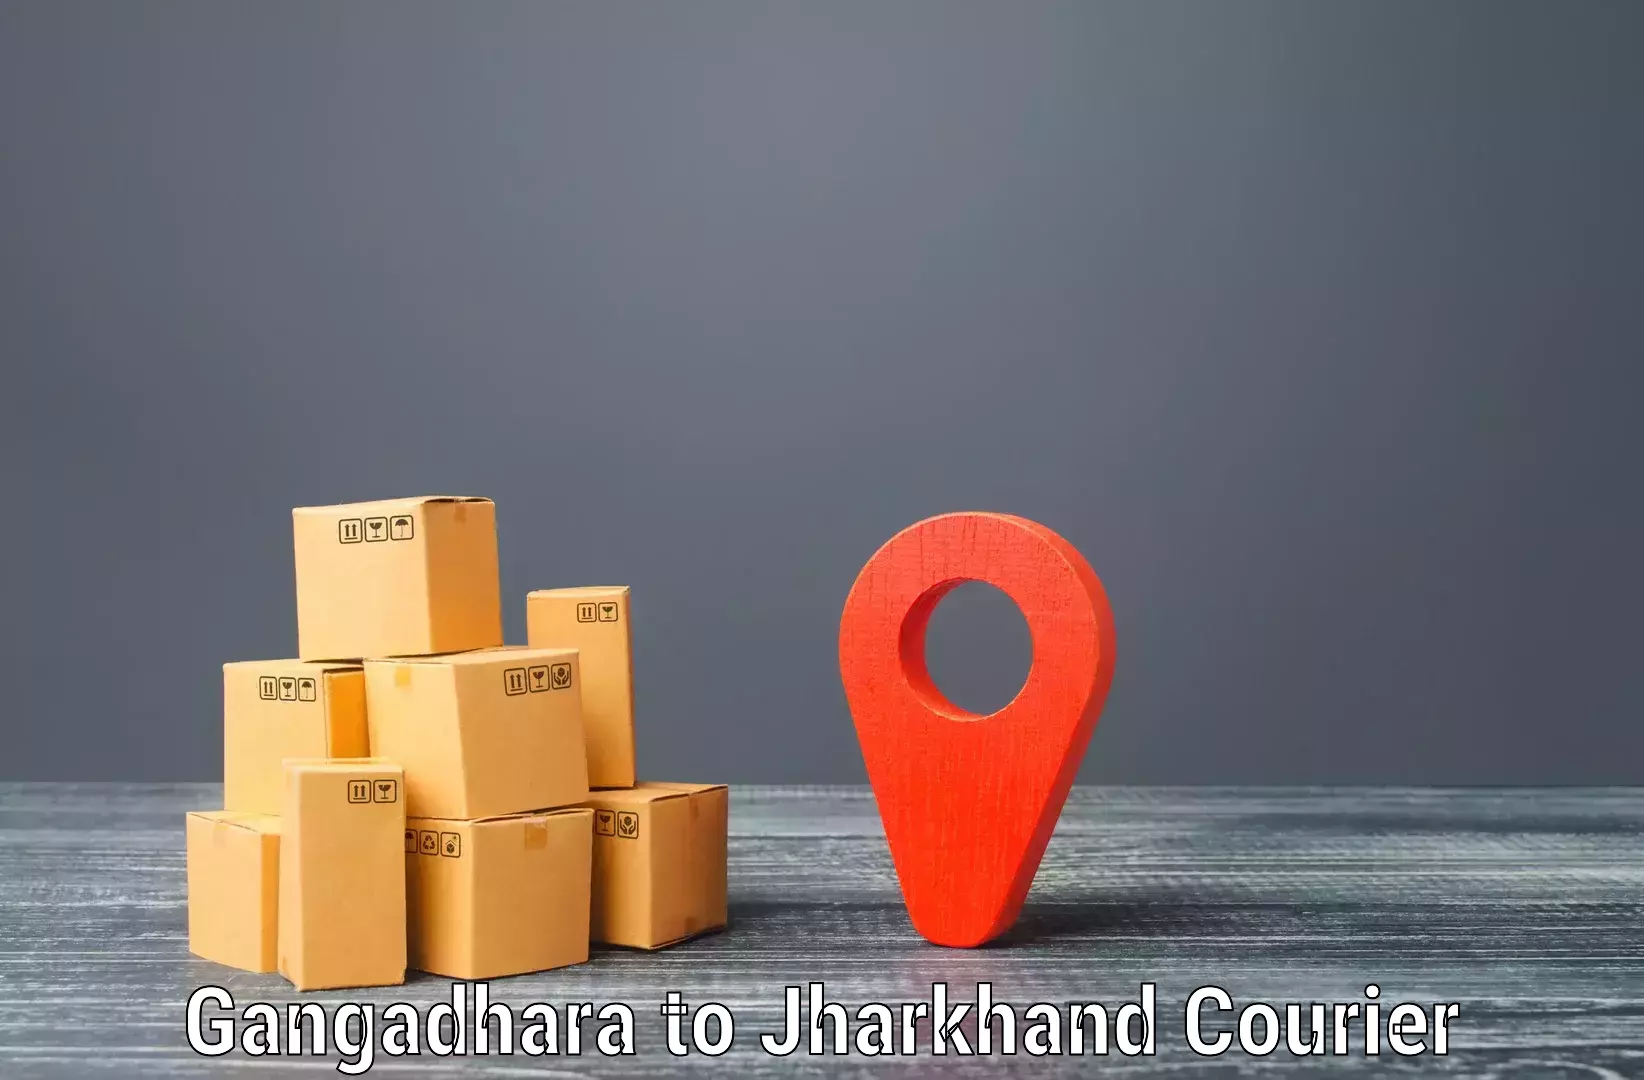 Efficient shipping platforms Gangadhara to Seraikella